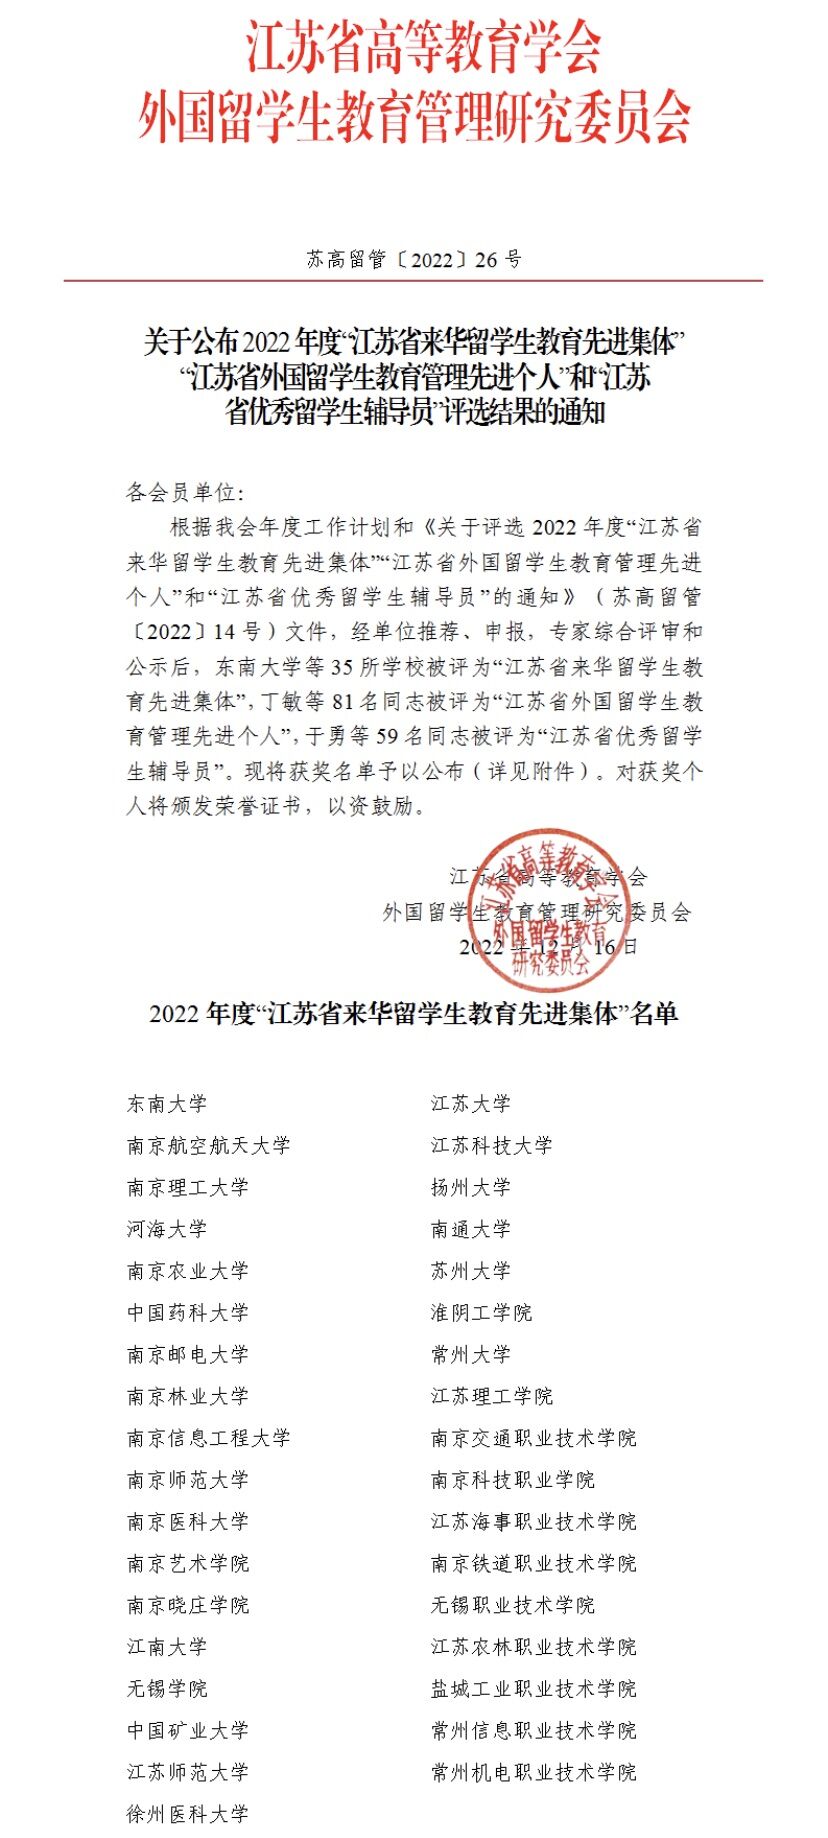 学院荣获2022年“江苏省来华留学生教育先进集体”